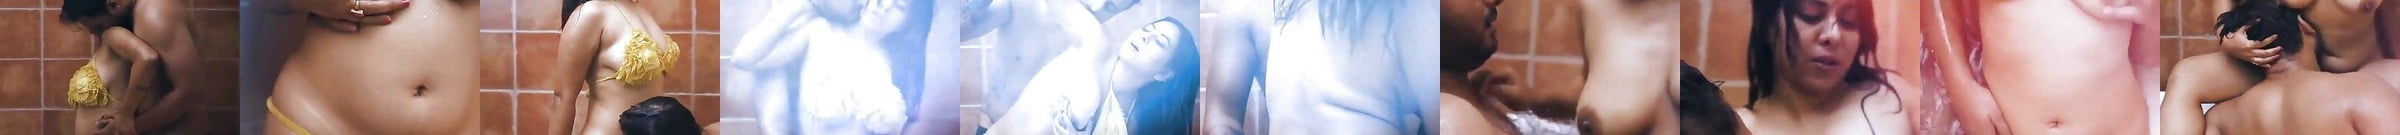 Desi Indian Actress Nandana Sen Nude Porn 2f Xhamster Jp